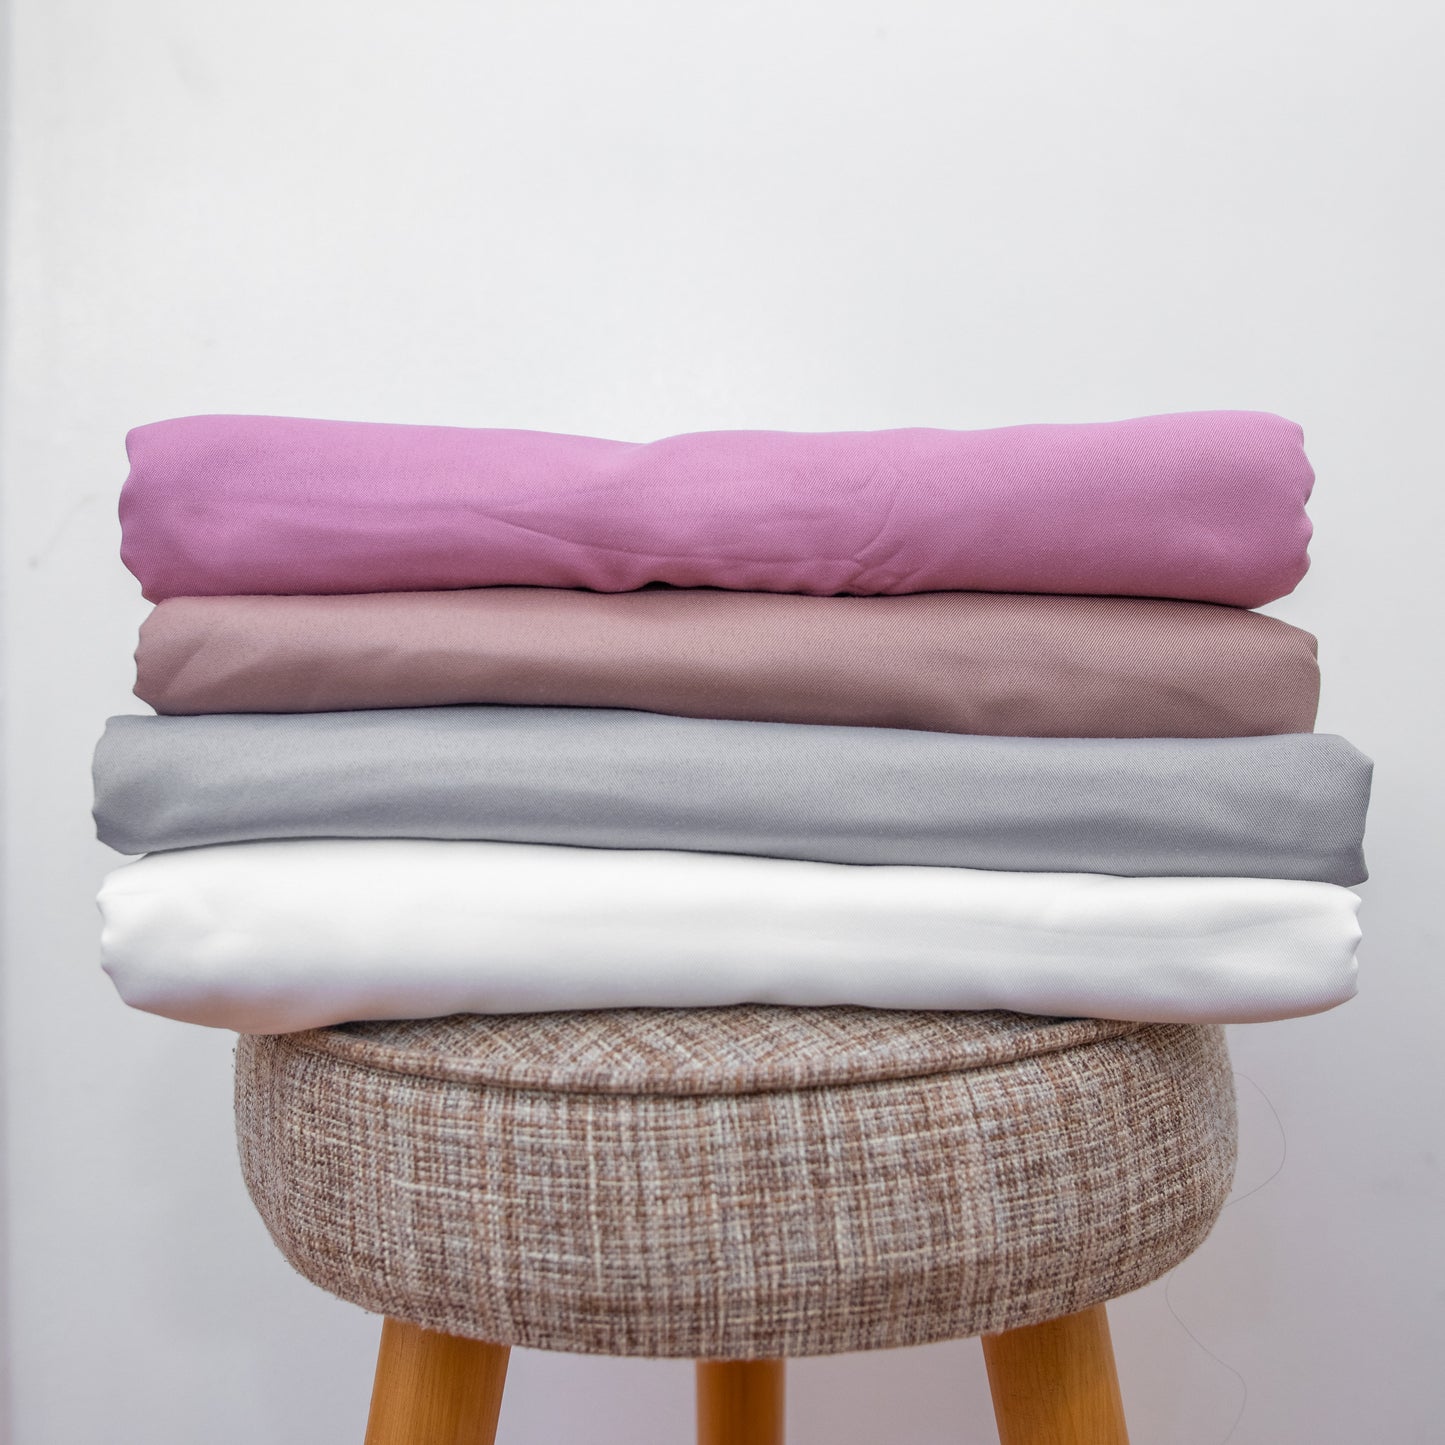 Soft Blanket in Premium Cotton